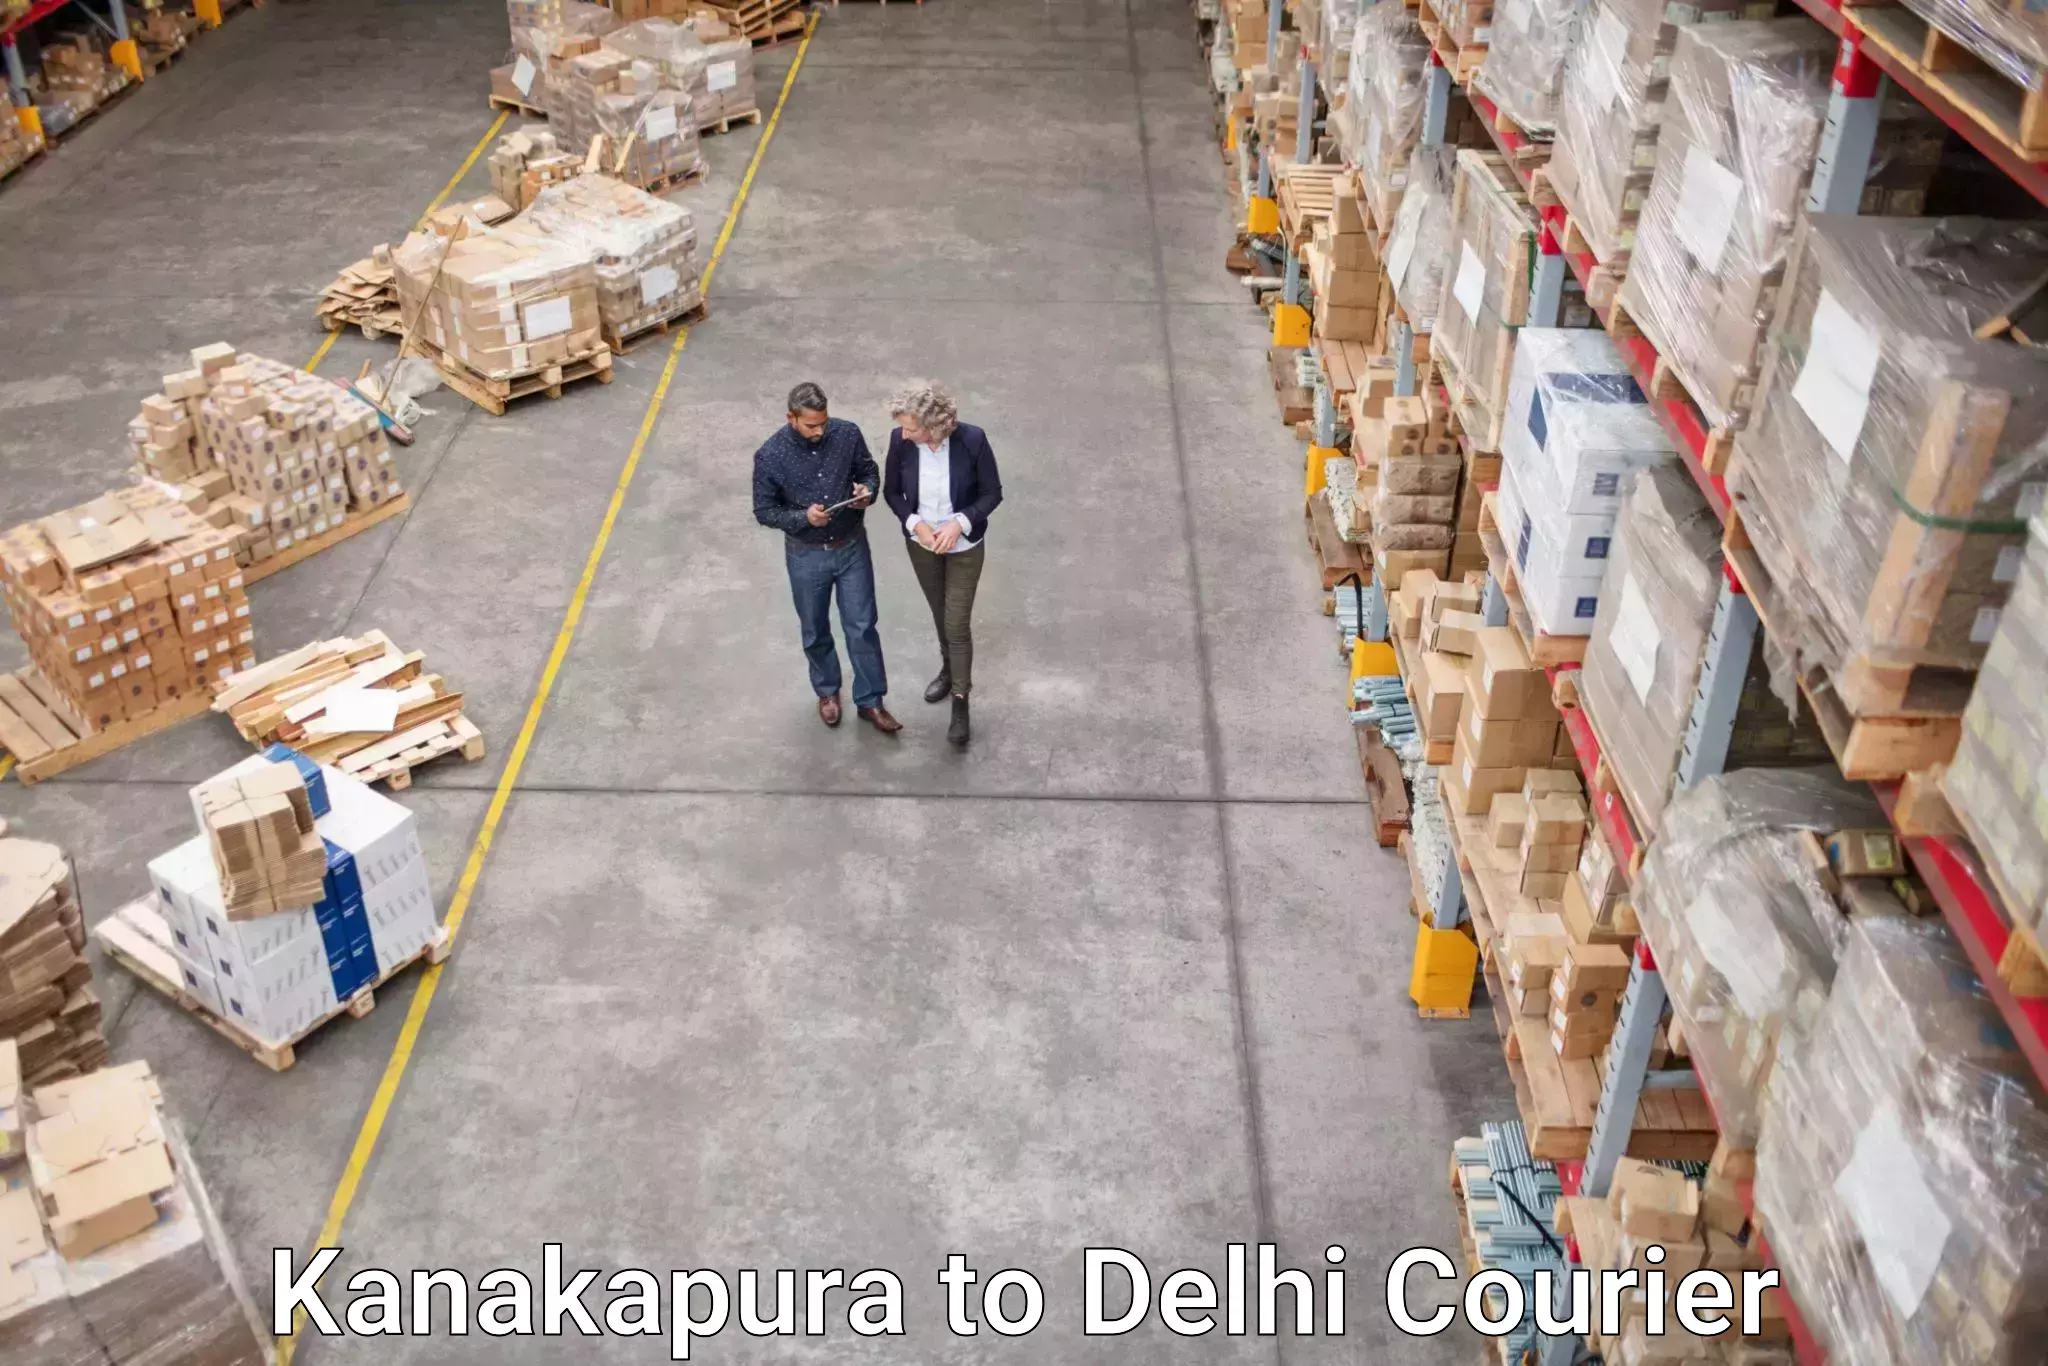 Global courier networks Kanakapura to Jawaharlal Nehru University New Delhi